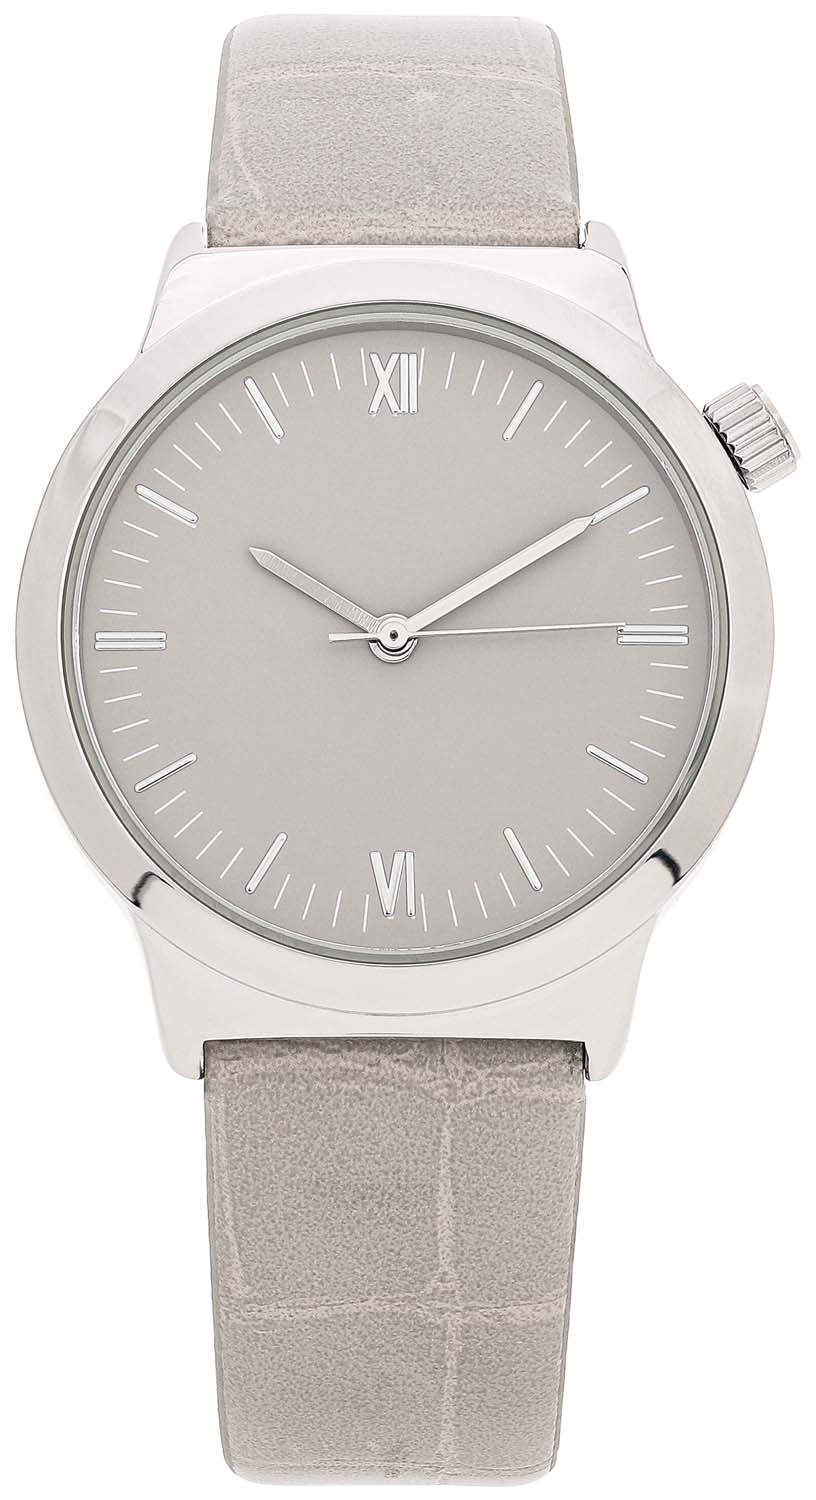 Excellanc Horloge met metalen riempje zilver casual uitstraling Sieraden Horloges Horloges met metalen riempje 